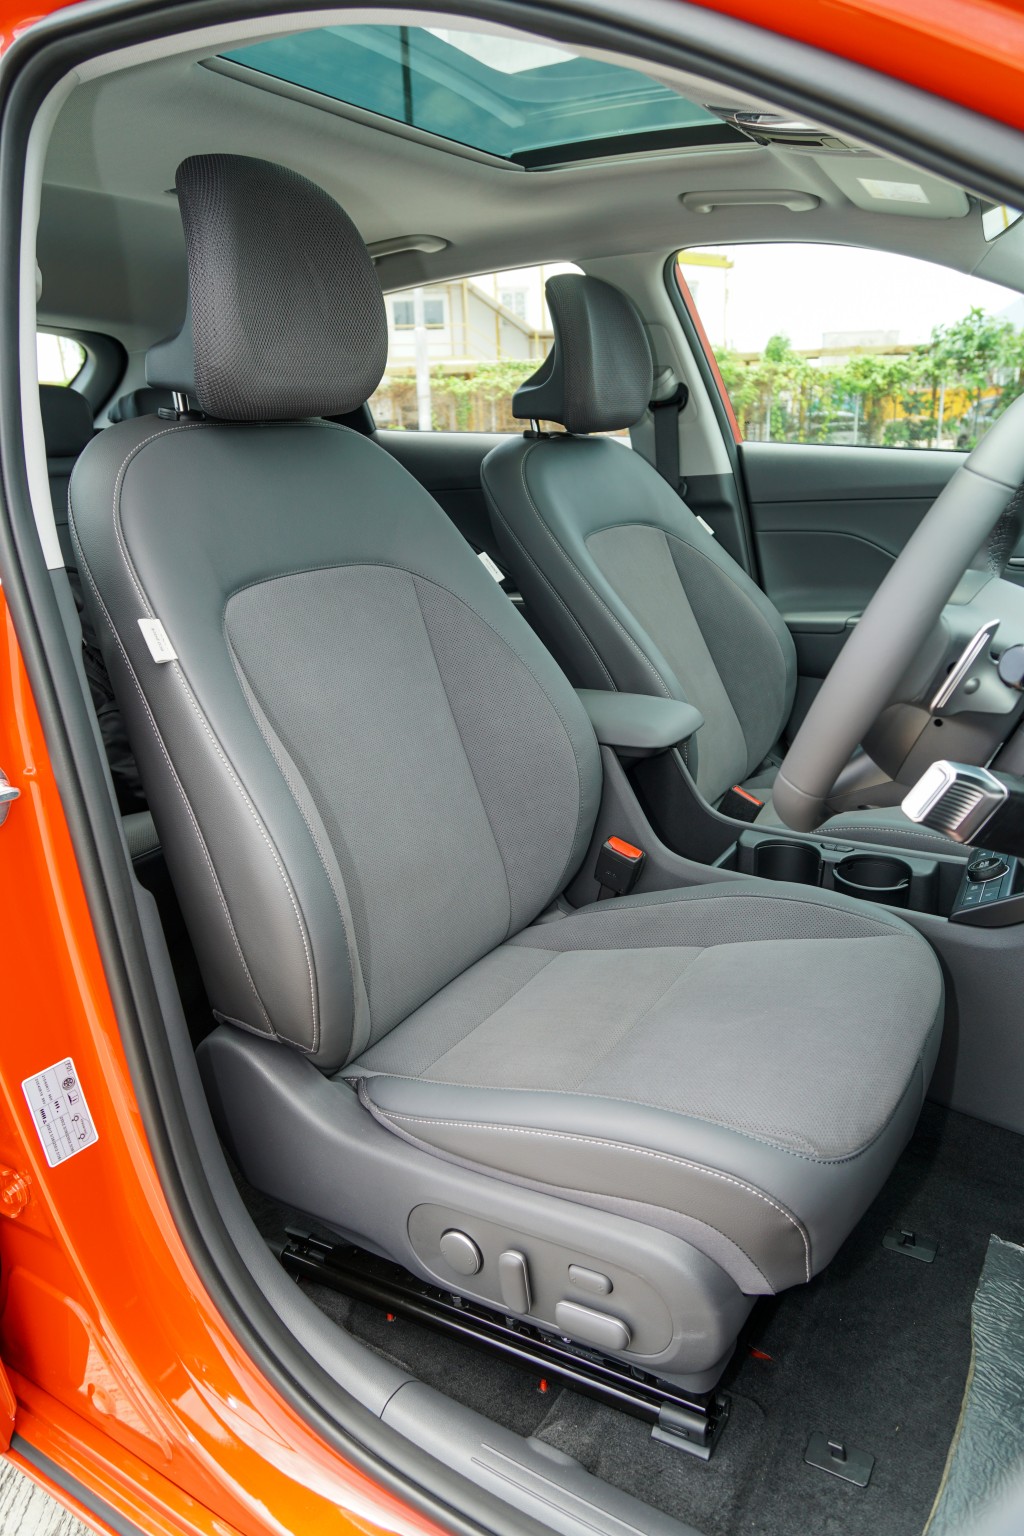 全新第二代现代Hyundai Kona Electric试车升级至车内舒适套装（税前另加$9,800），座椅以真皮绒面包裹，前座并增设记忆功能。